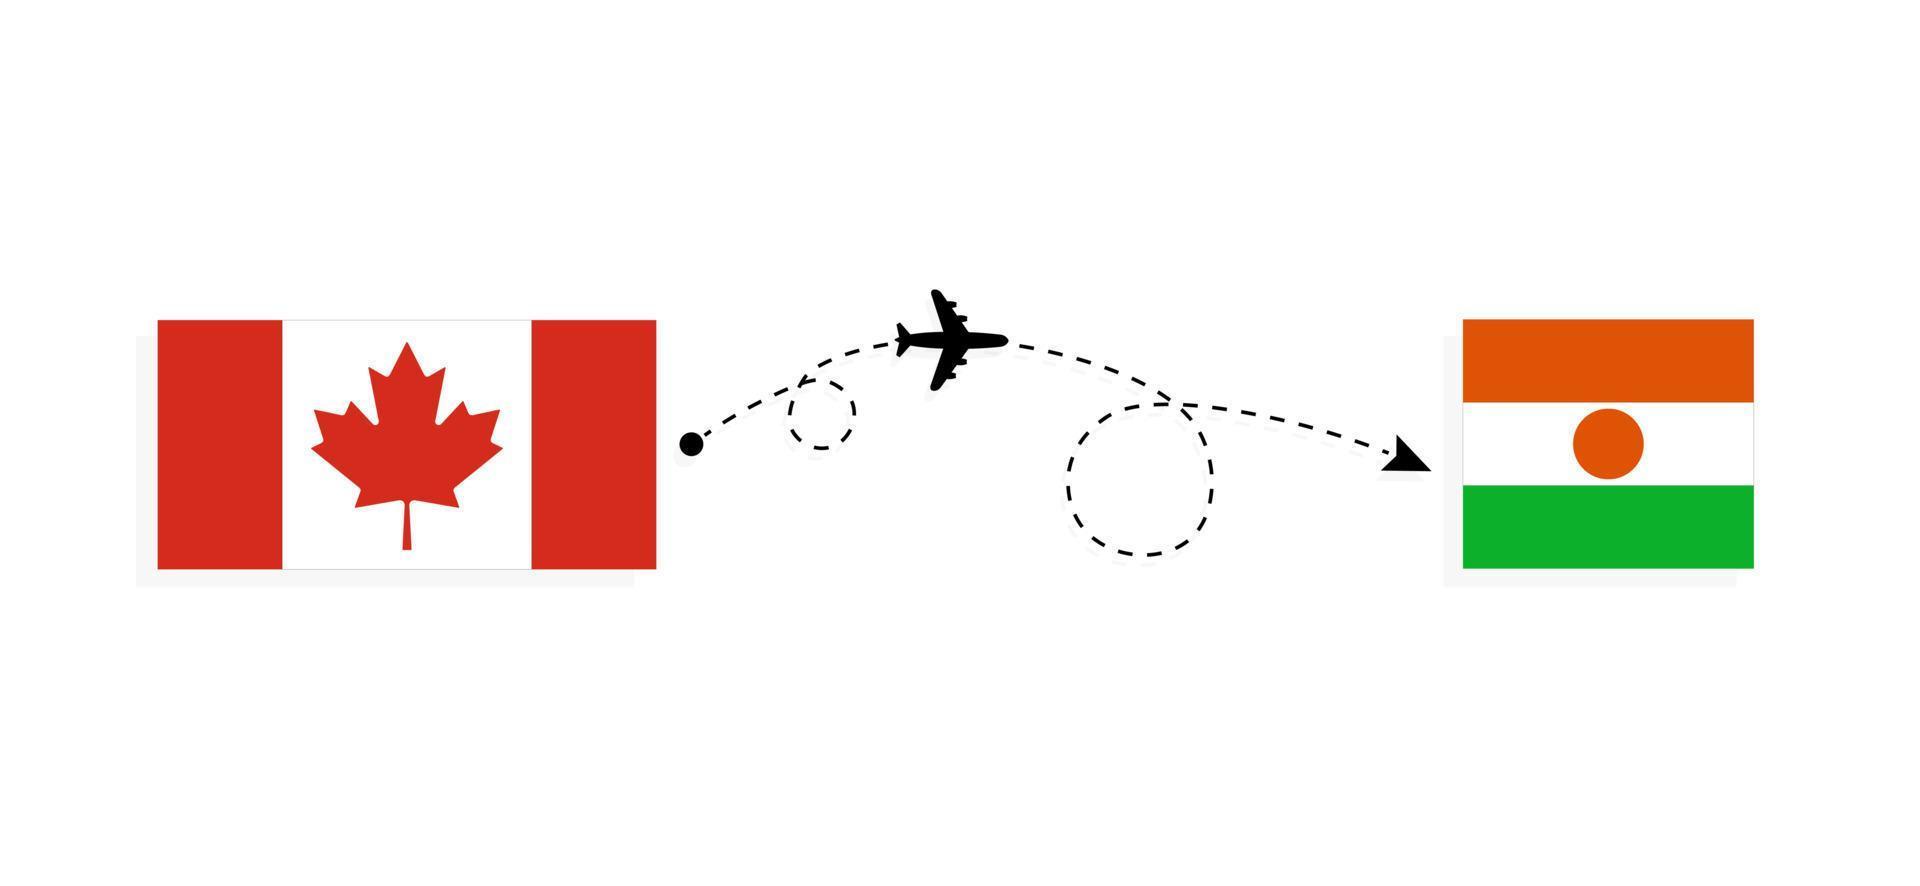 vuelo y viaje desde canadá a níger en avión de pasajeros concepto de viaje vector